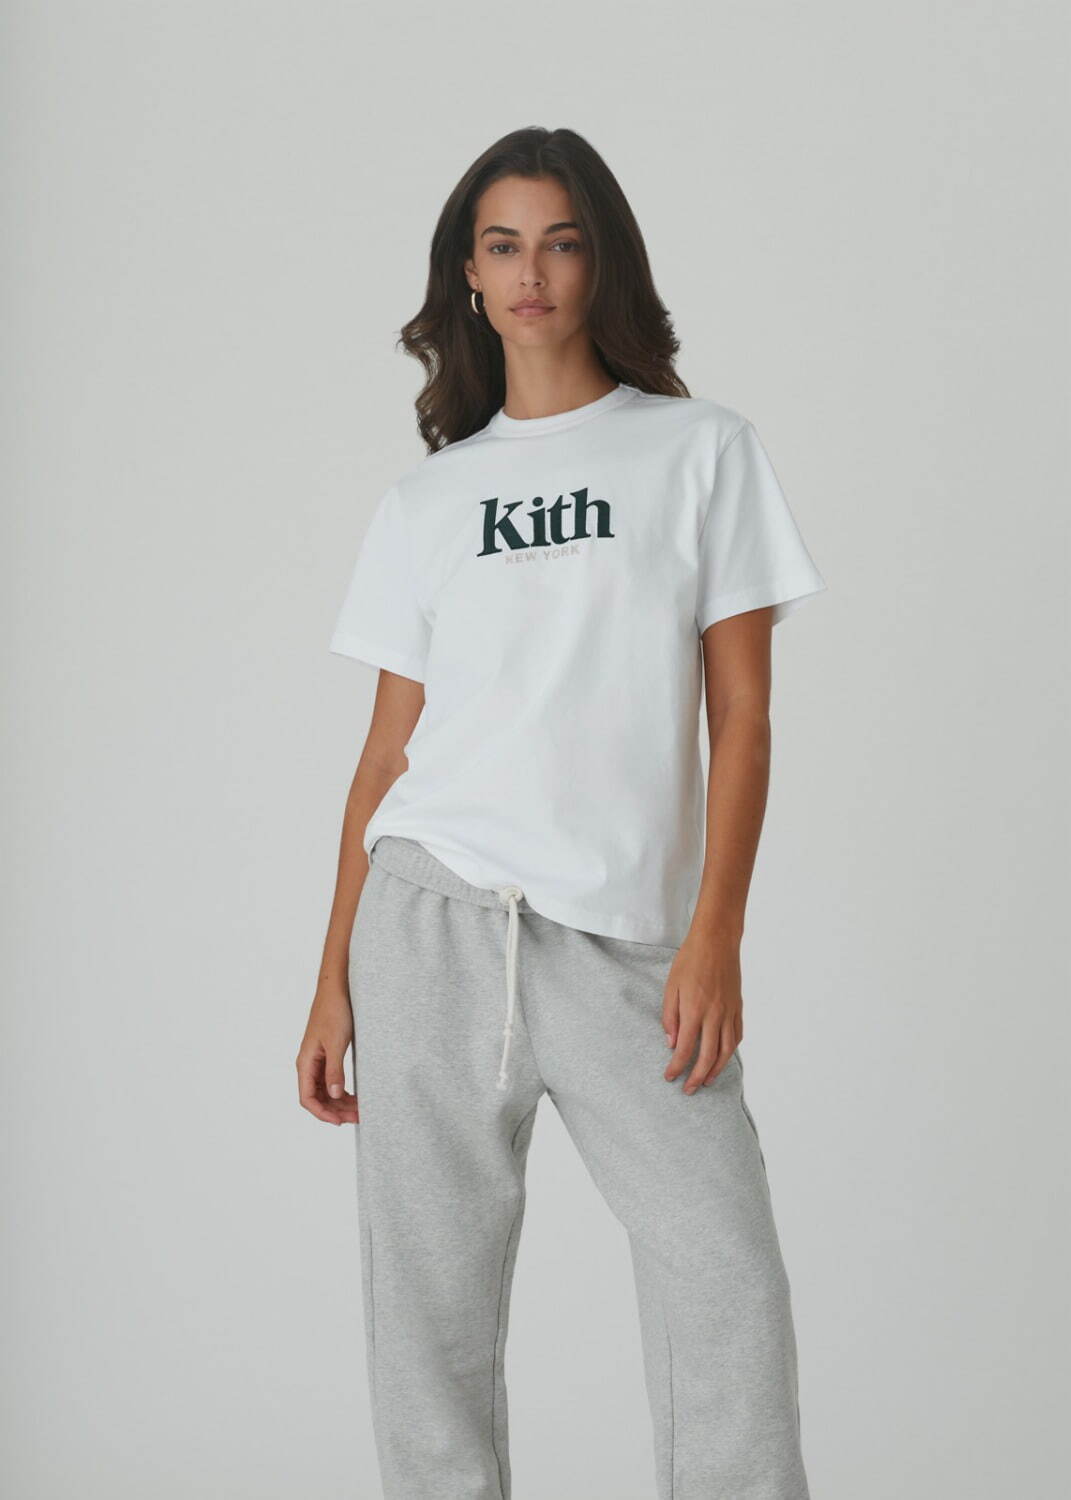 キス(Kith) 2021年春ウィメンズコレクション ディテール - 写真69